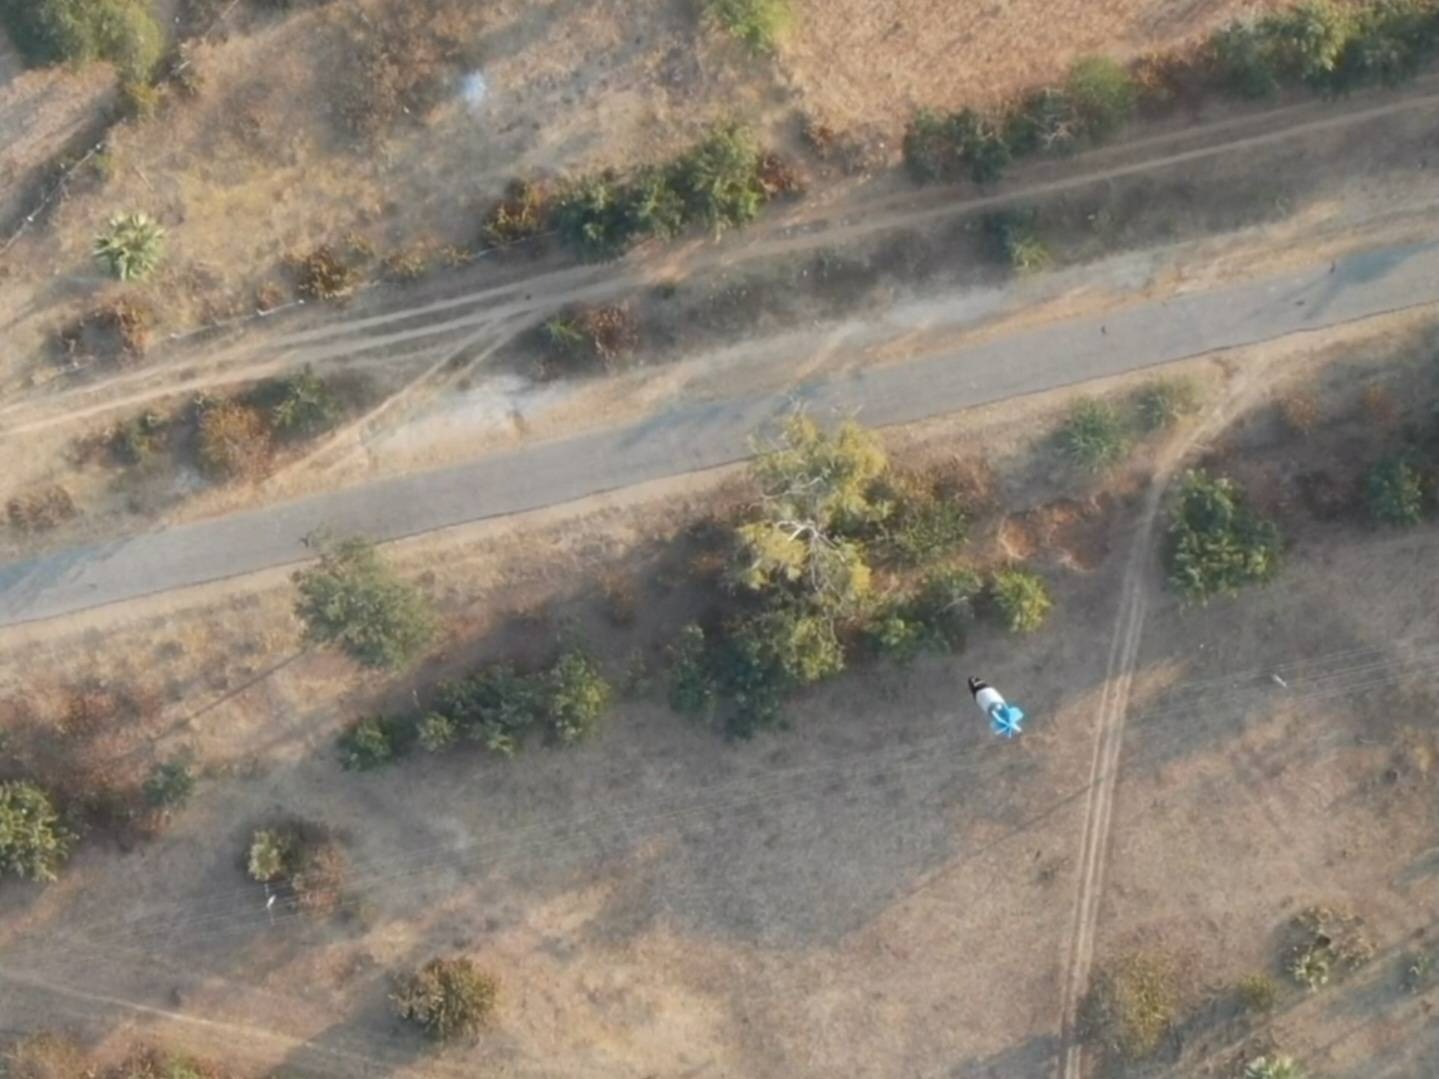 ကင်းပုန်းဝပ်နေတဲ့နေရာ Drone နဲ့ ဗုံးကြဲခံရလို့ စစ်ကောင်စီတပ်သား ၂ ဦးဒဏ်ရာရ